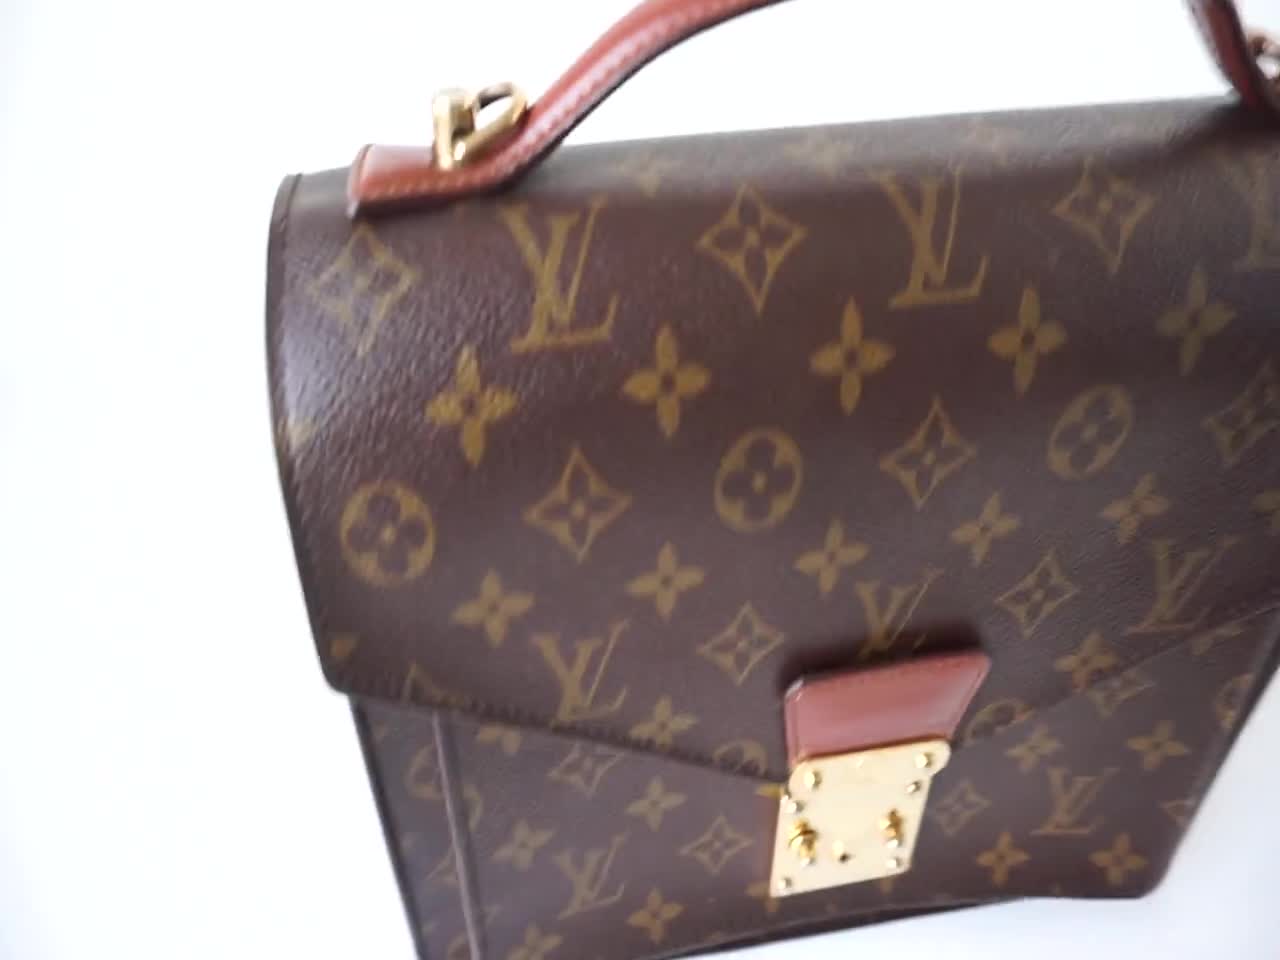 Louis Vuitton Monceau Briefcase Handbag for Sale in South